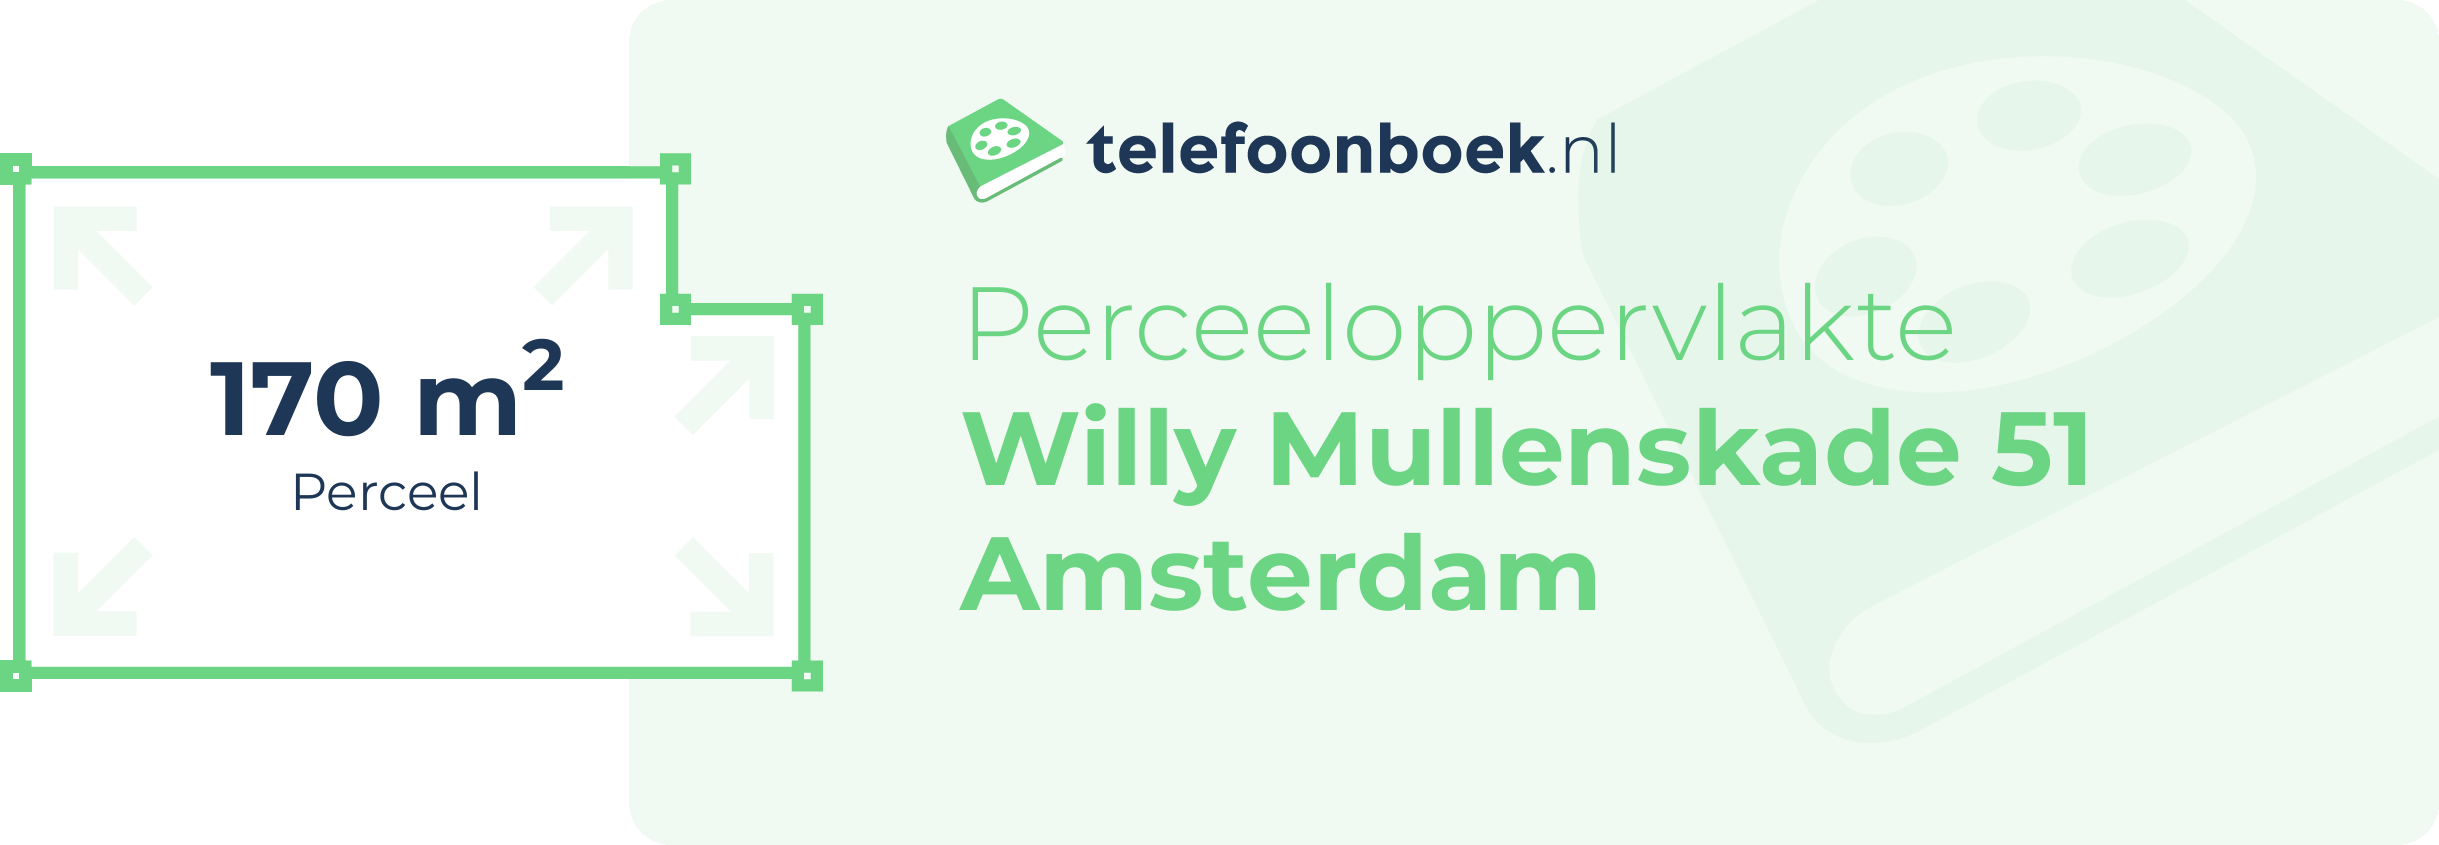 Perceeloppervlakte Willy Mullenskade 51 Amsterdam